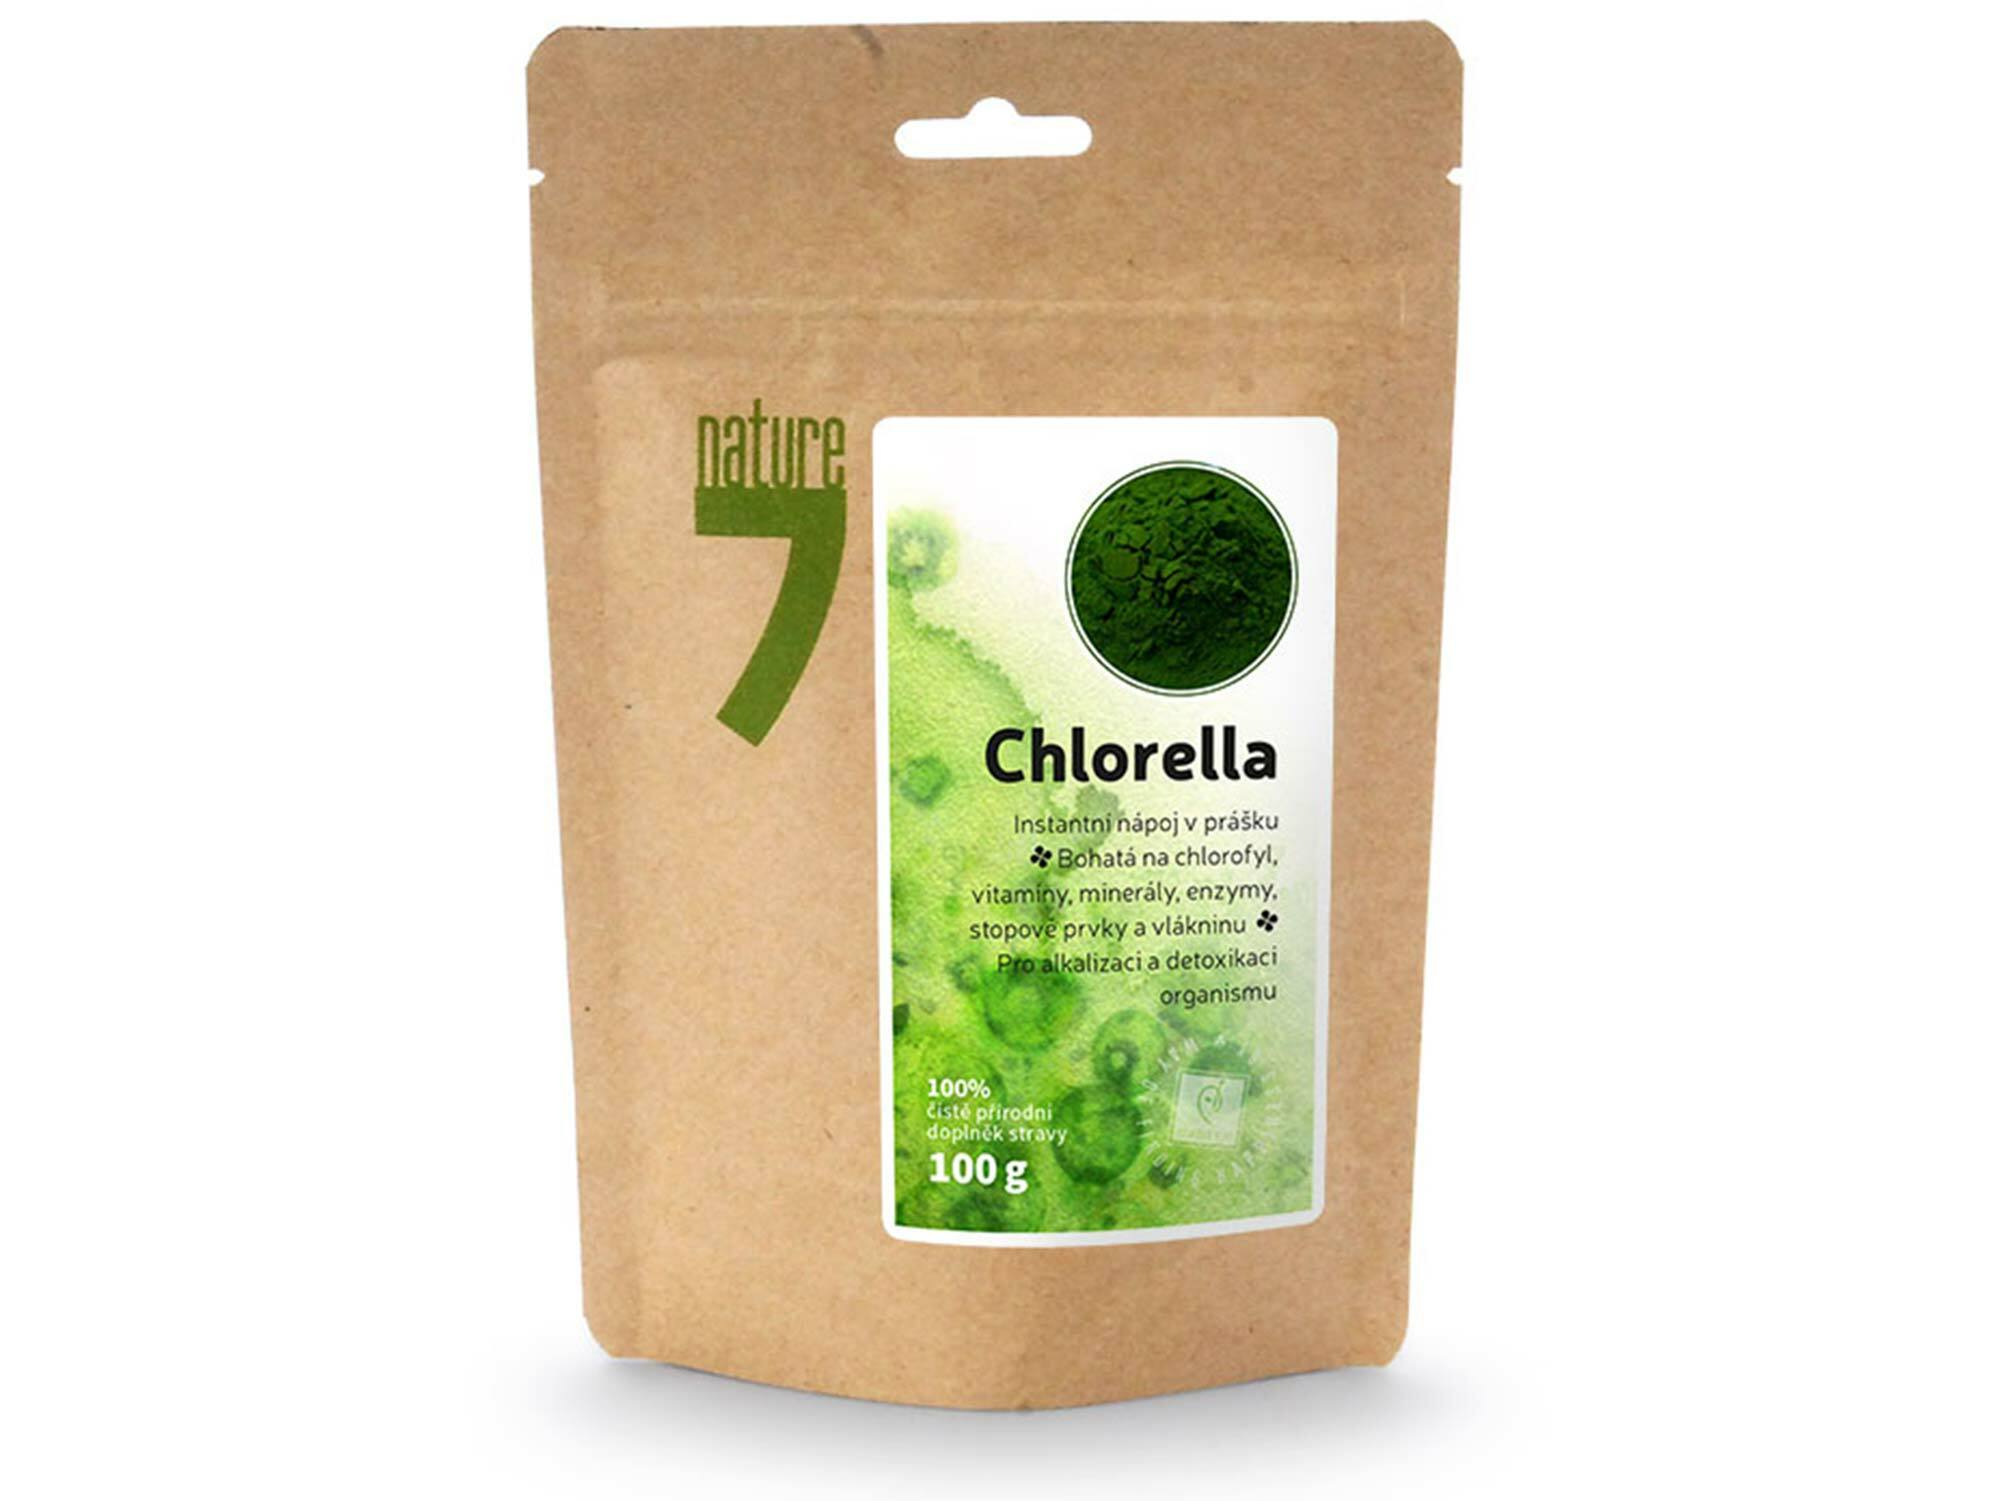 chlorella napoj v prasku 100g nature7